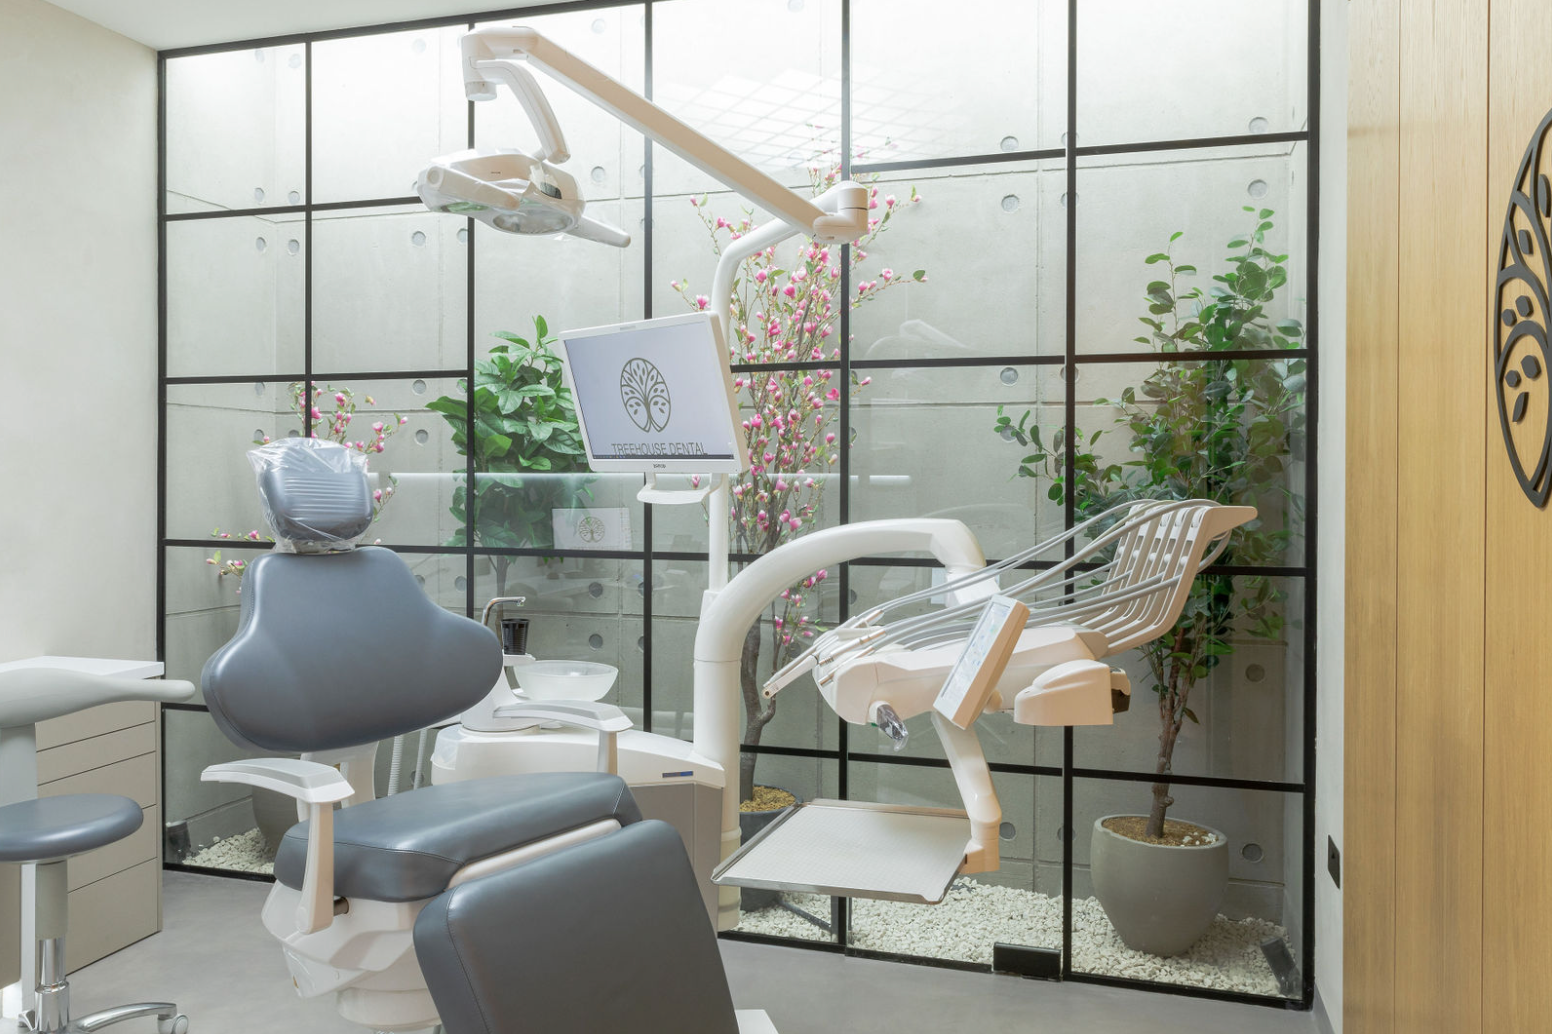 RPA dental chair